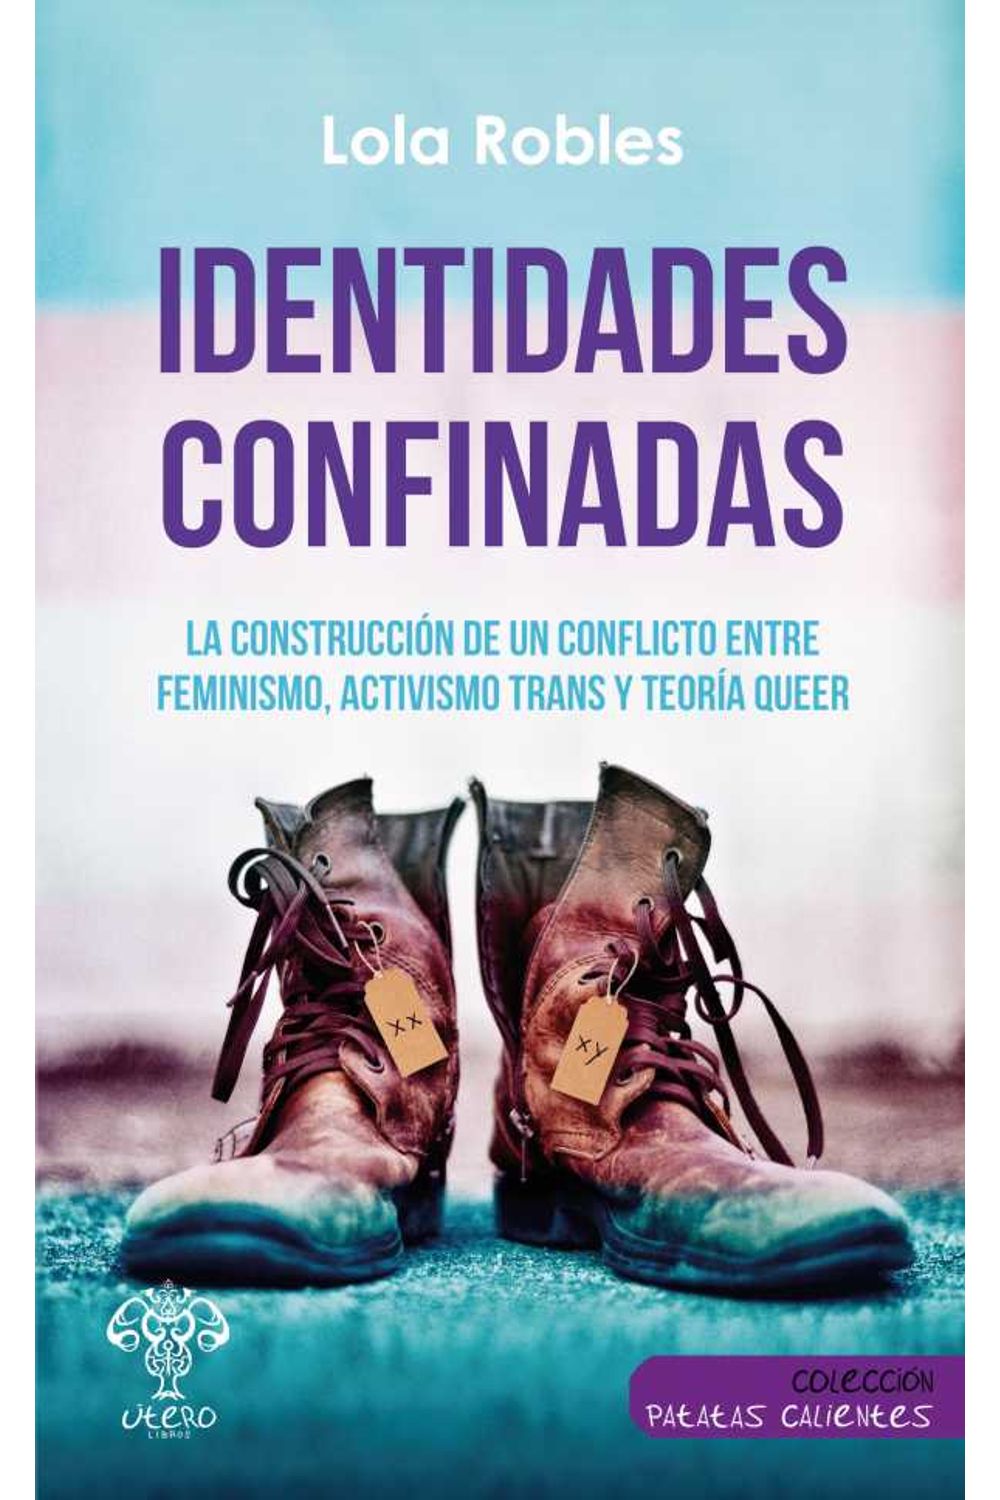 bw-identidades-confinadas-tero-libros-9788494994975